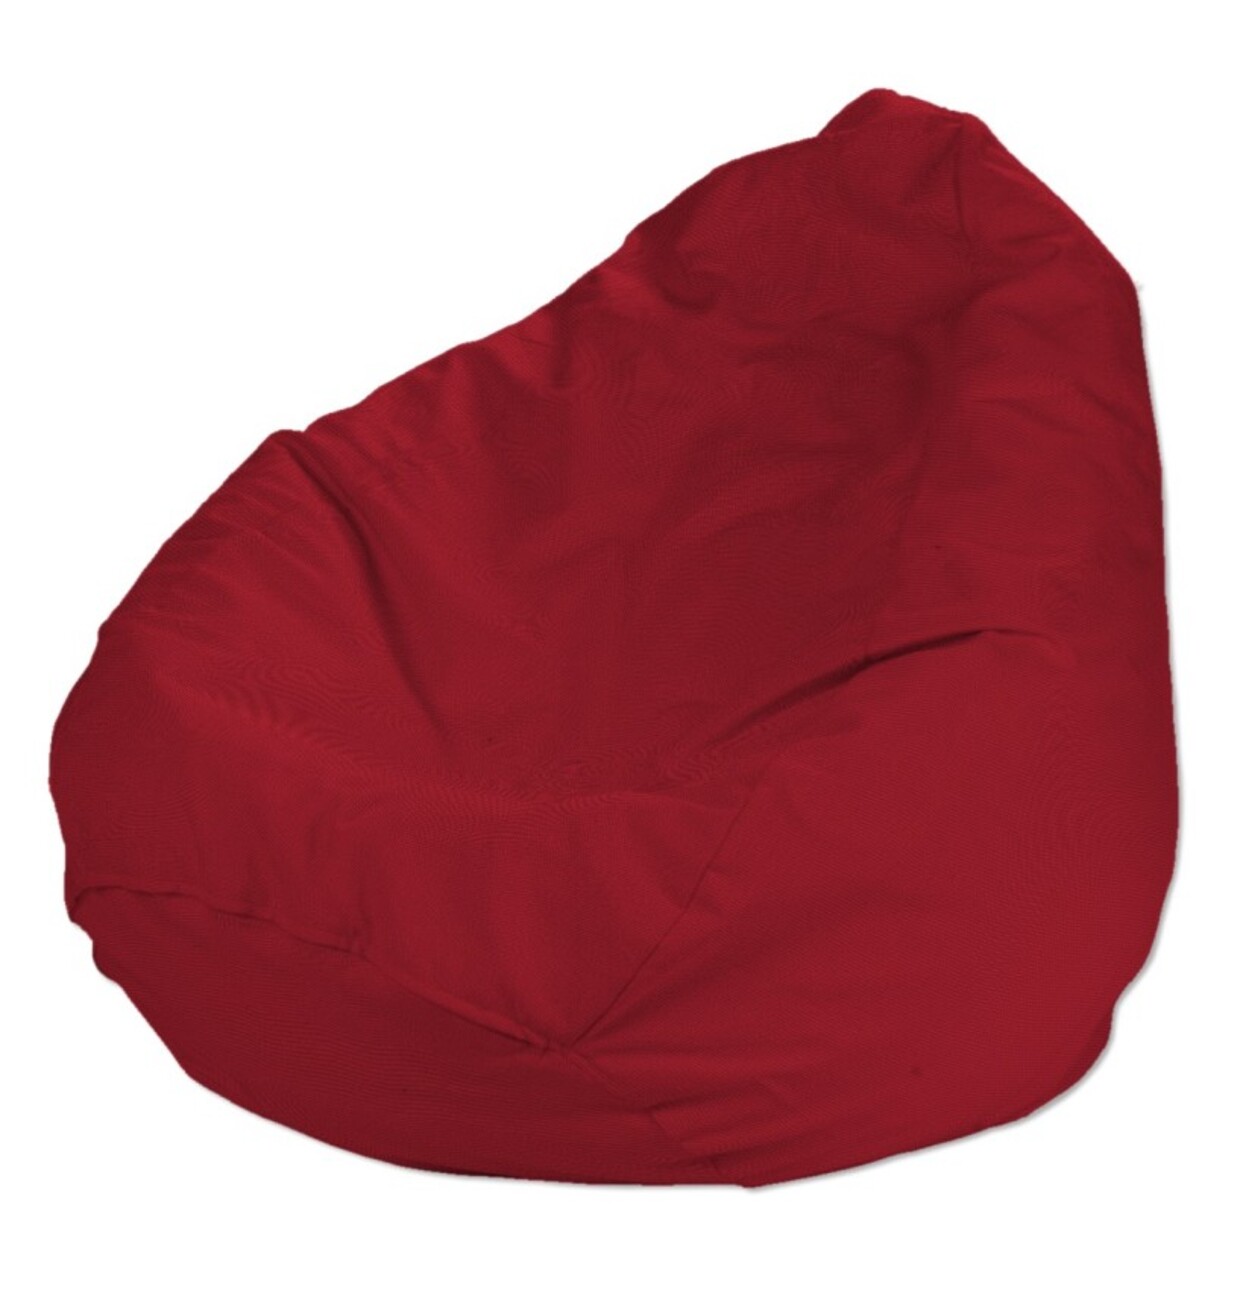 Bezug für Sitzsack, rot, Bezug für Sitzsack Ø80 x 115 cm, Etna (705-60) günstig online kaufen